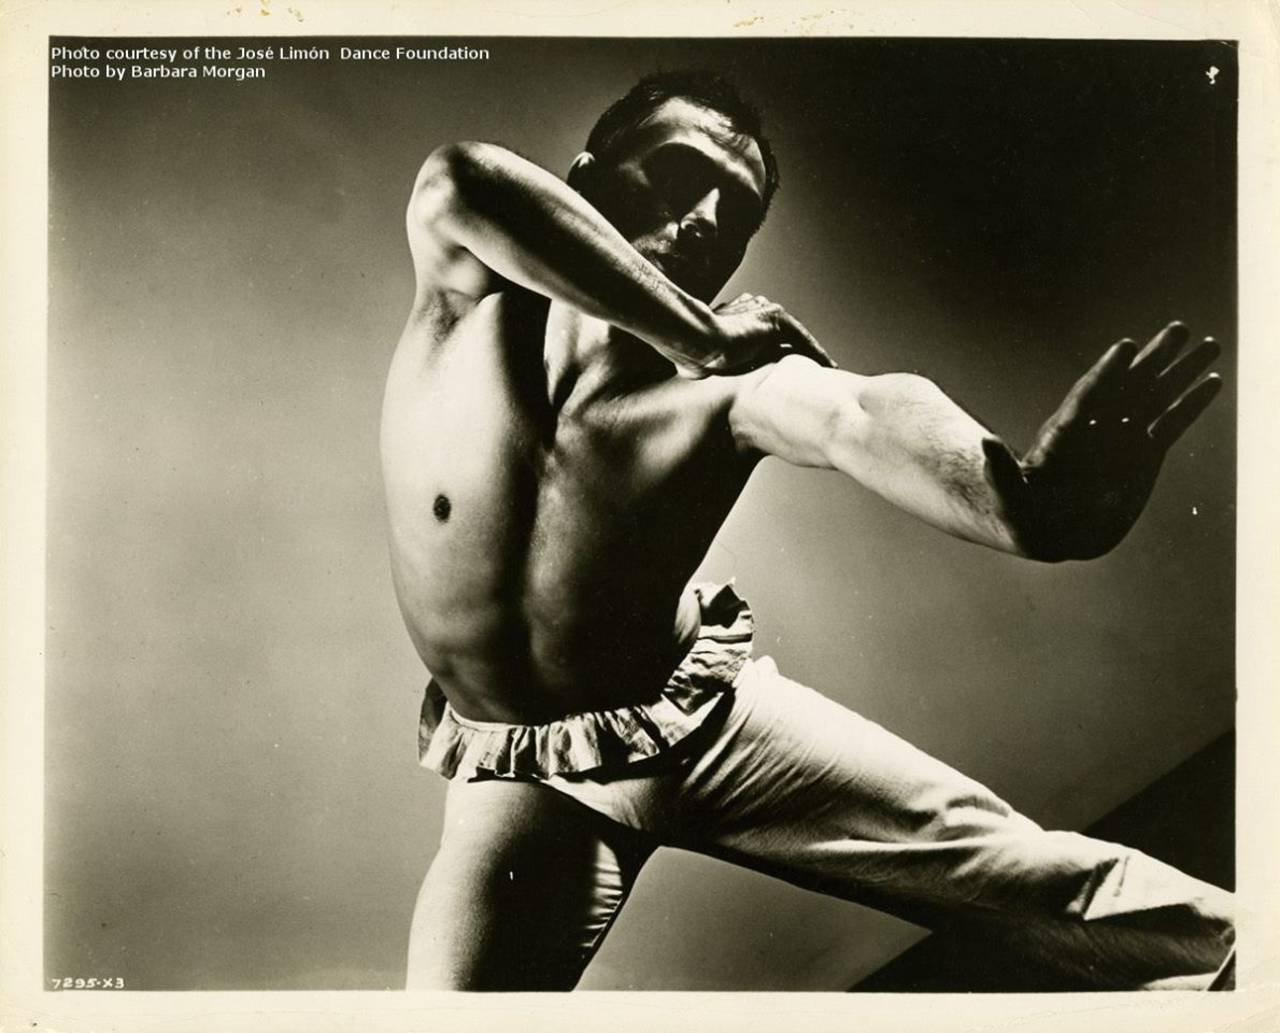 Mundial. El mexicano José Limón, es un referente fundamental de la danza moderna internacional, como bailarín y coreográfo.